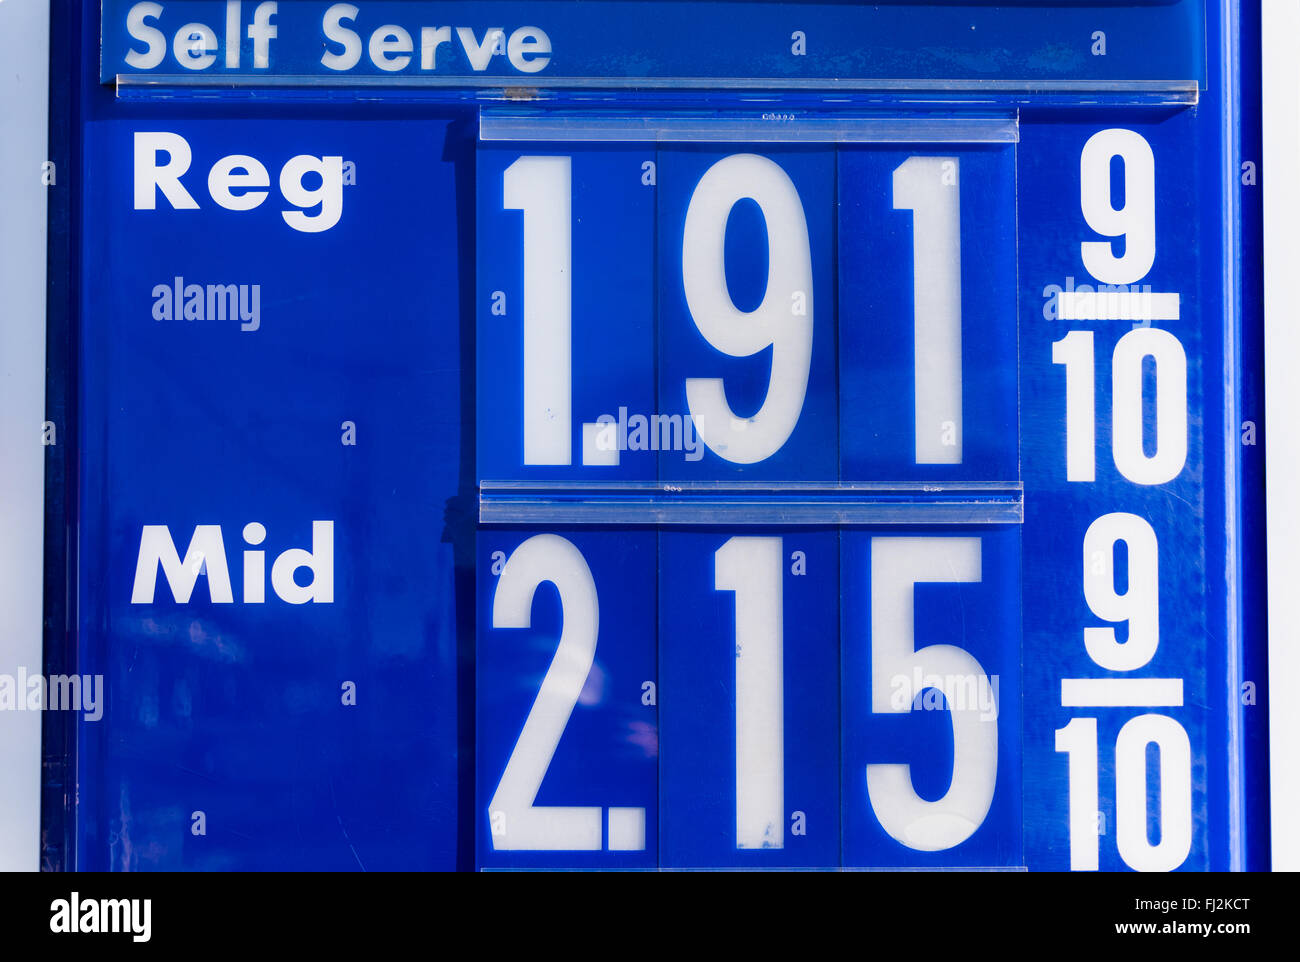 Schild mit Gas-Preise an einer Tankstelle. Mit dem Preis von Öl fallen  haben die Gaspreise in den Vereinigten Staaten stetig rückläufig  Stockfotografie - Alamy